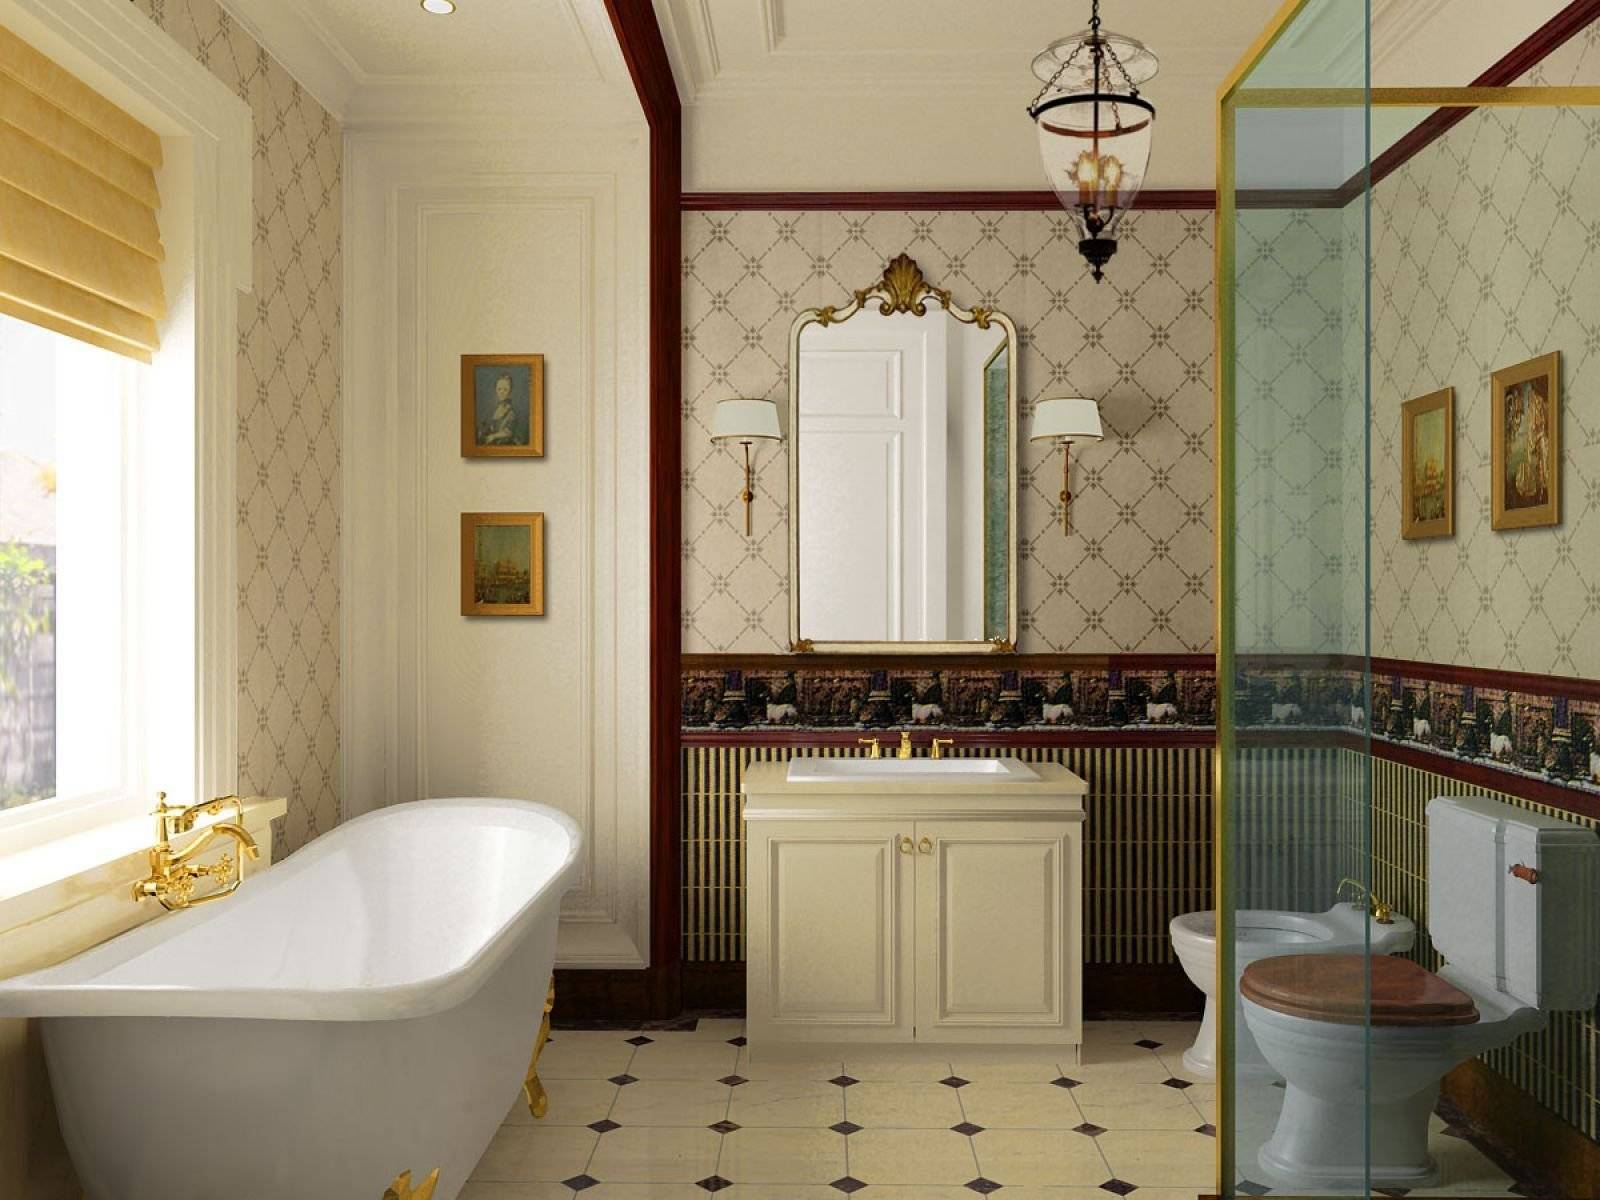 Ванная комната в английском стиле (фото) – выбор плитки, идеи интерьера